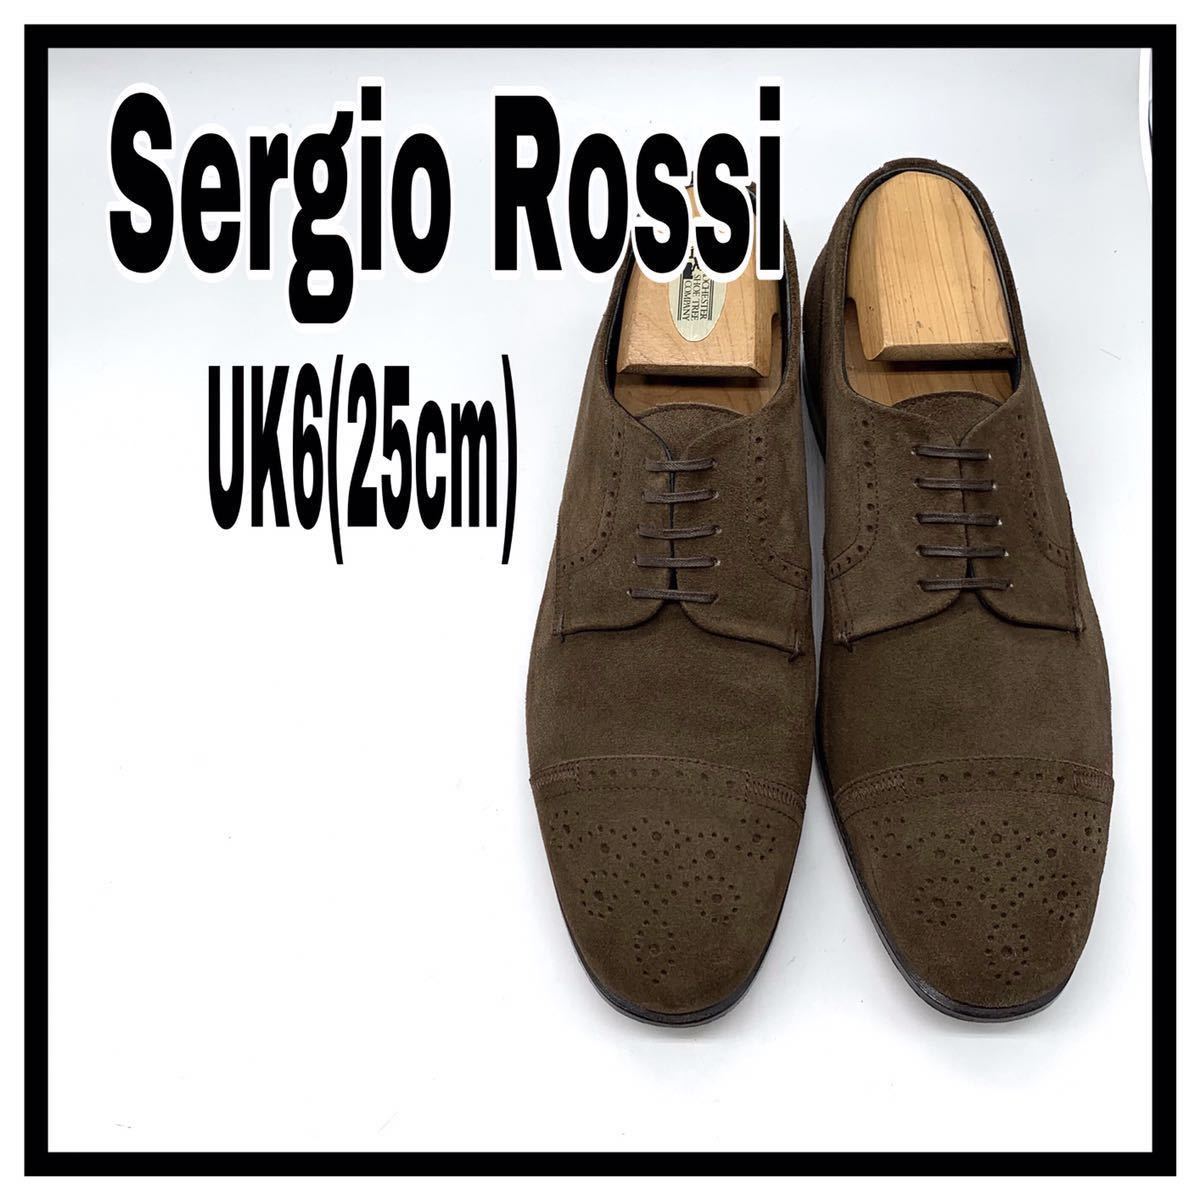 Sergio Rossi (セルジオ ロッシ) ドレスシューズ パンチドキャップトゥ メダリオン ビジネス スエード ブラウン 茶 UK6 25cm 革靴 メンズ